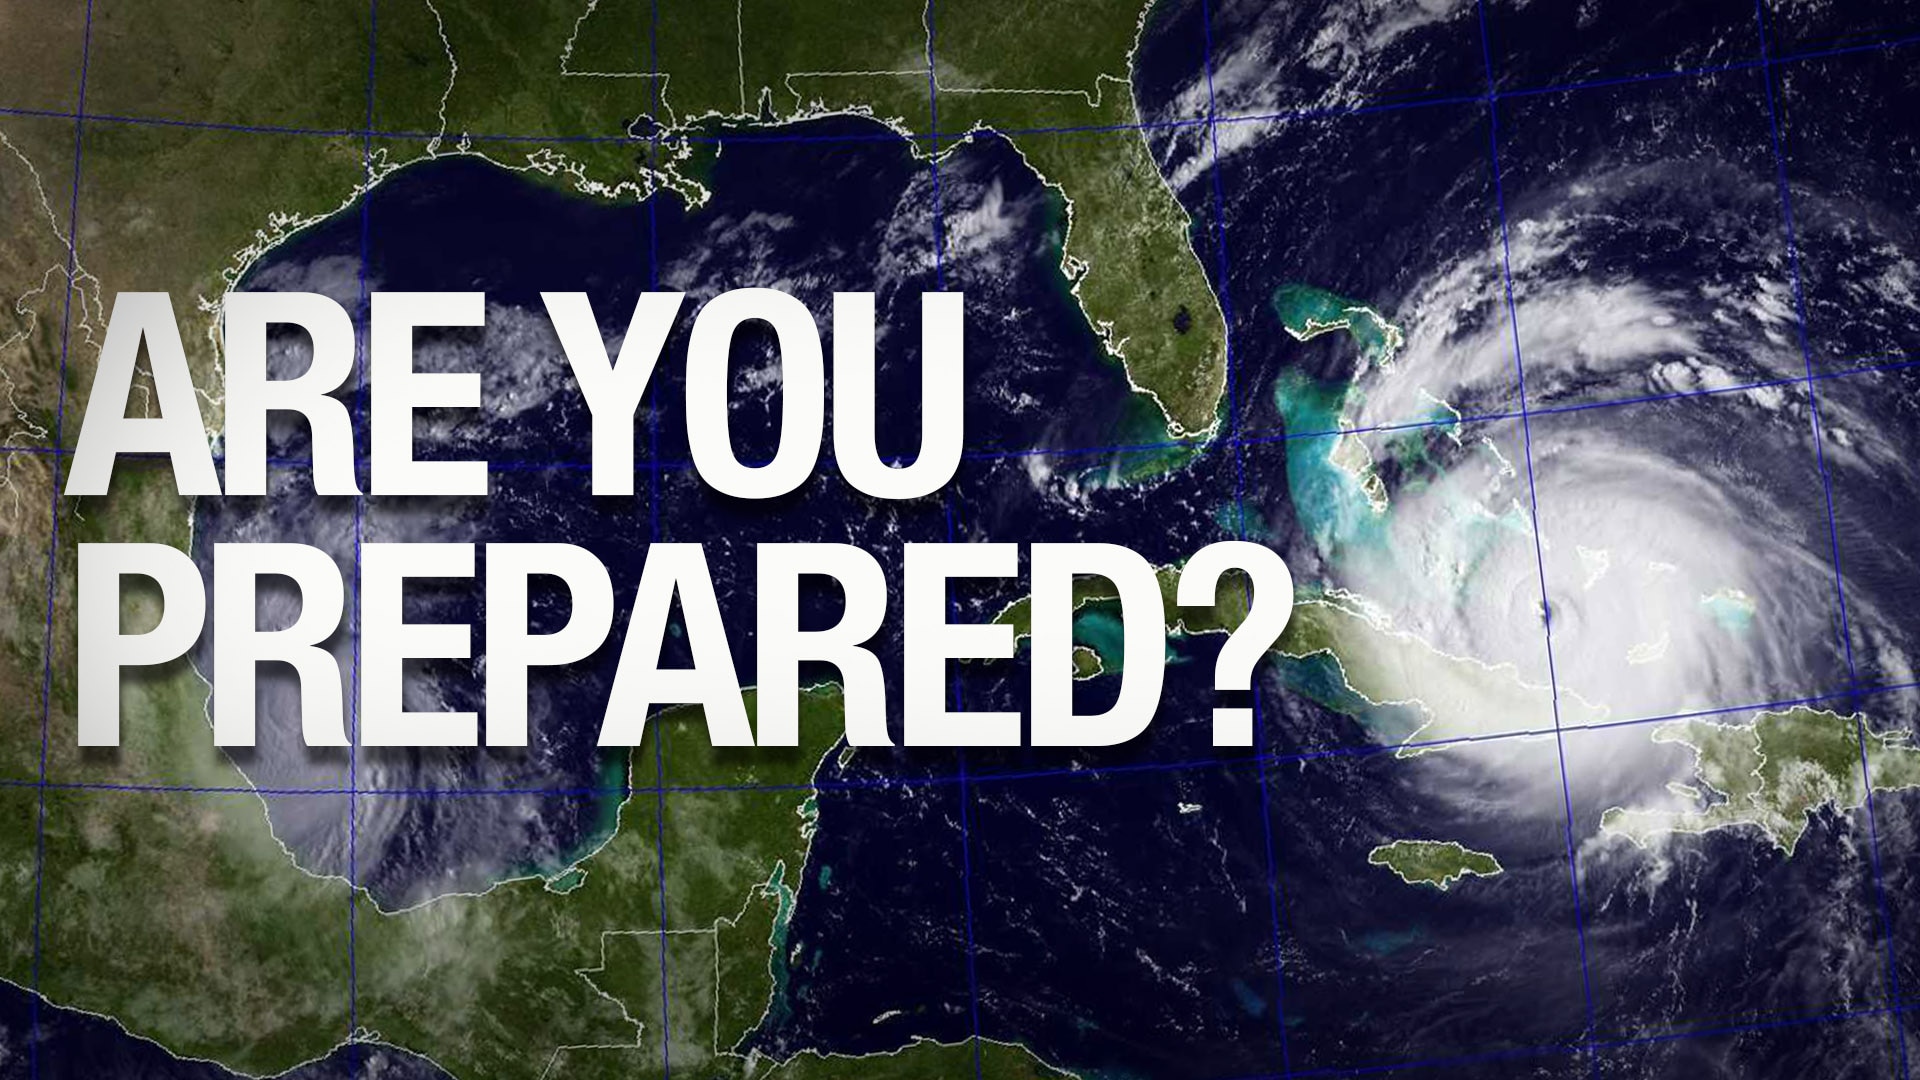 Large hurricane approaches Florida coast.